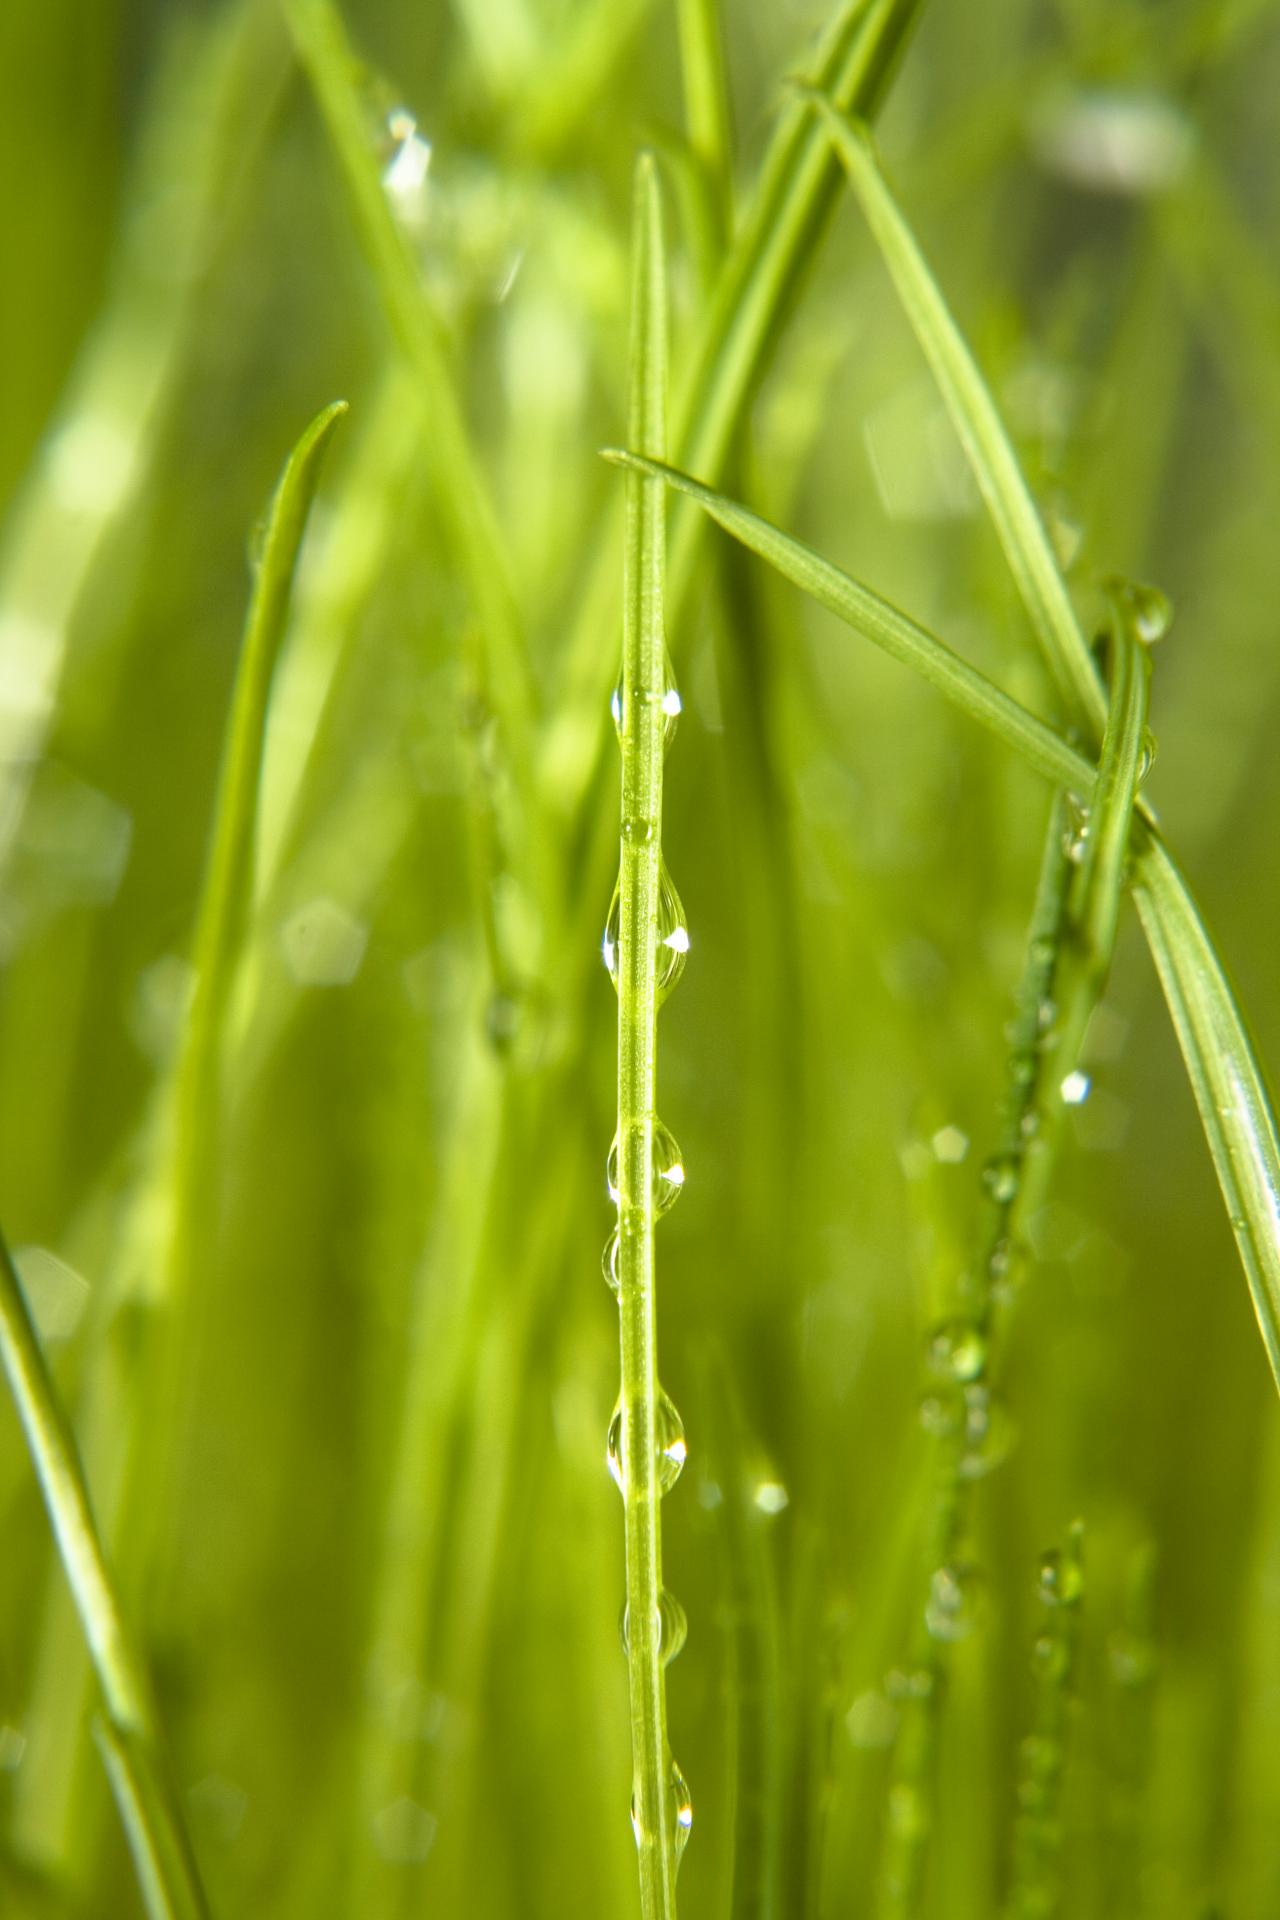 Free photo: Wet grass - rain, raindrop, ravel - Creative Commons ...